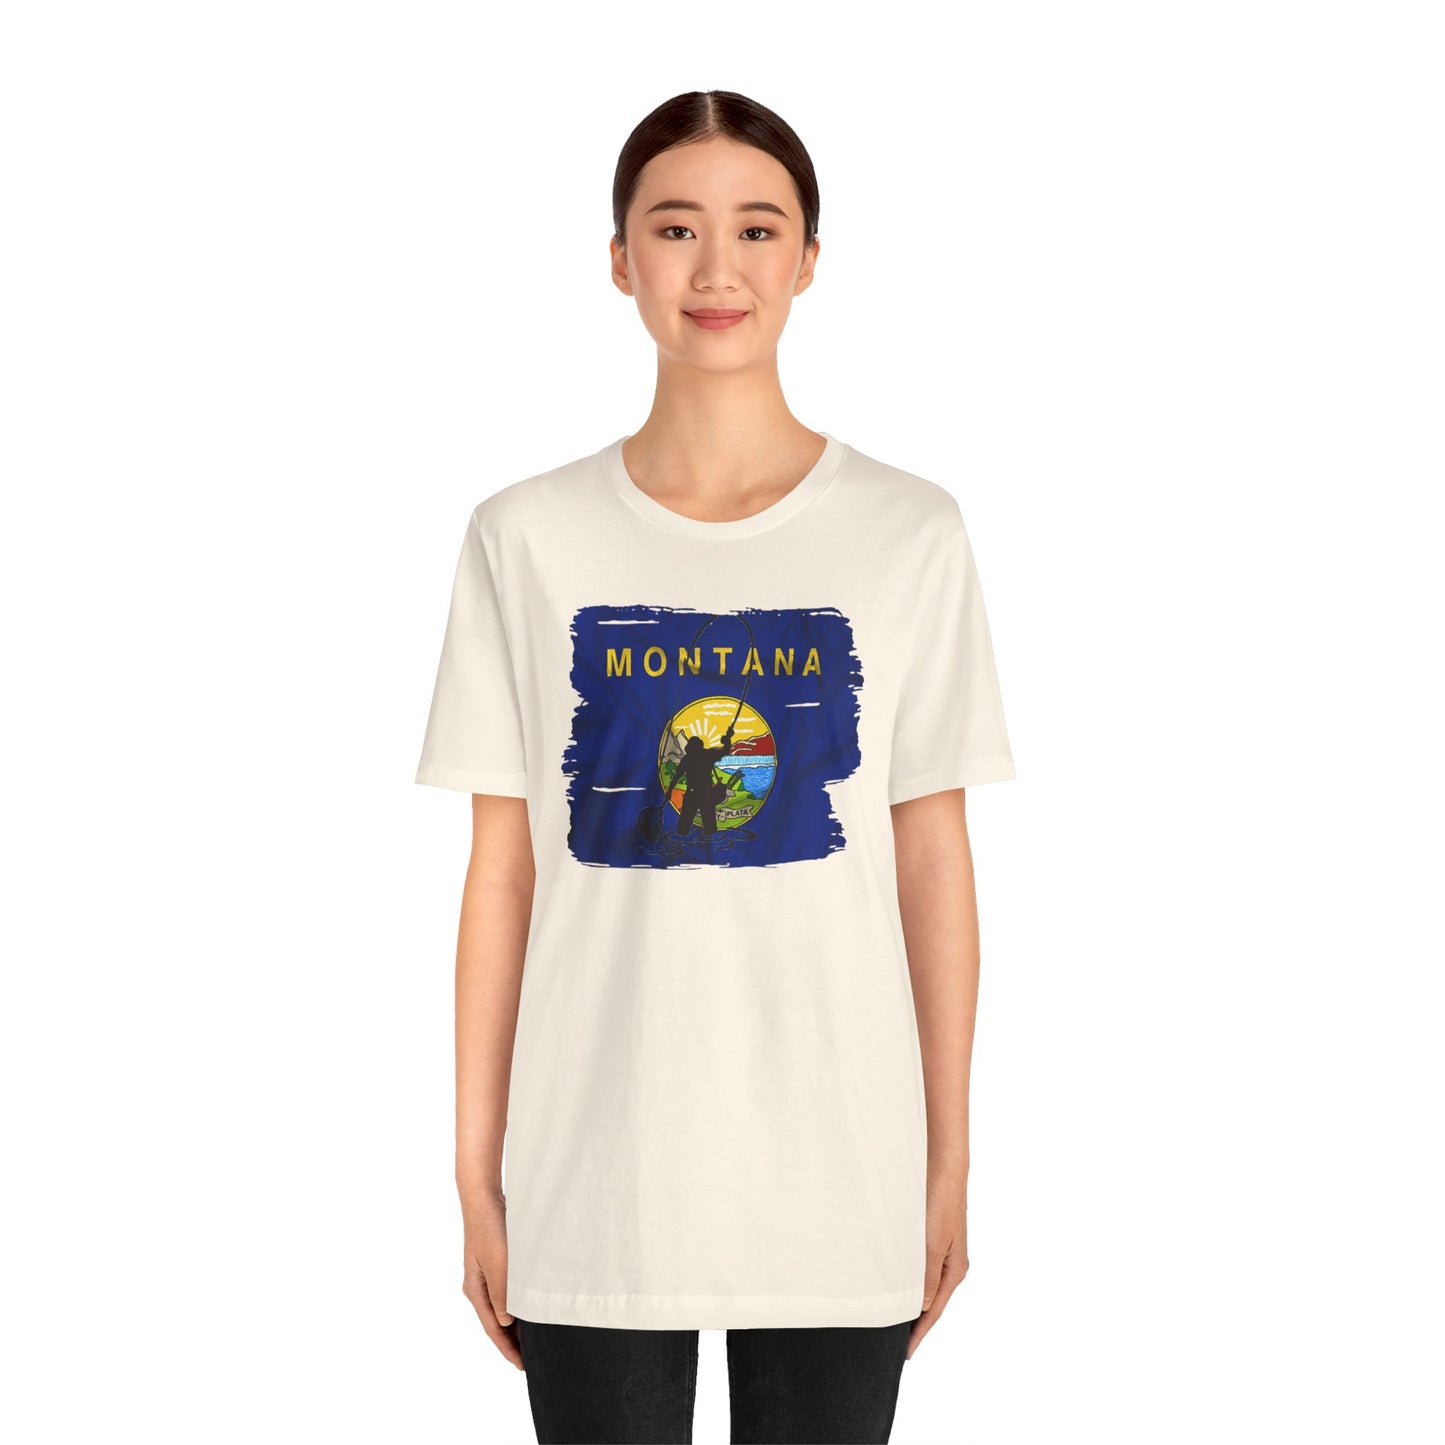 Montana Flyfishing T-shirt, Montana Fishing Shirt